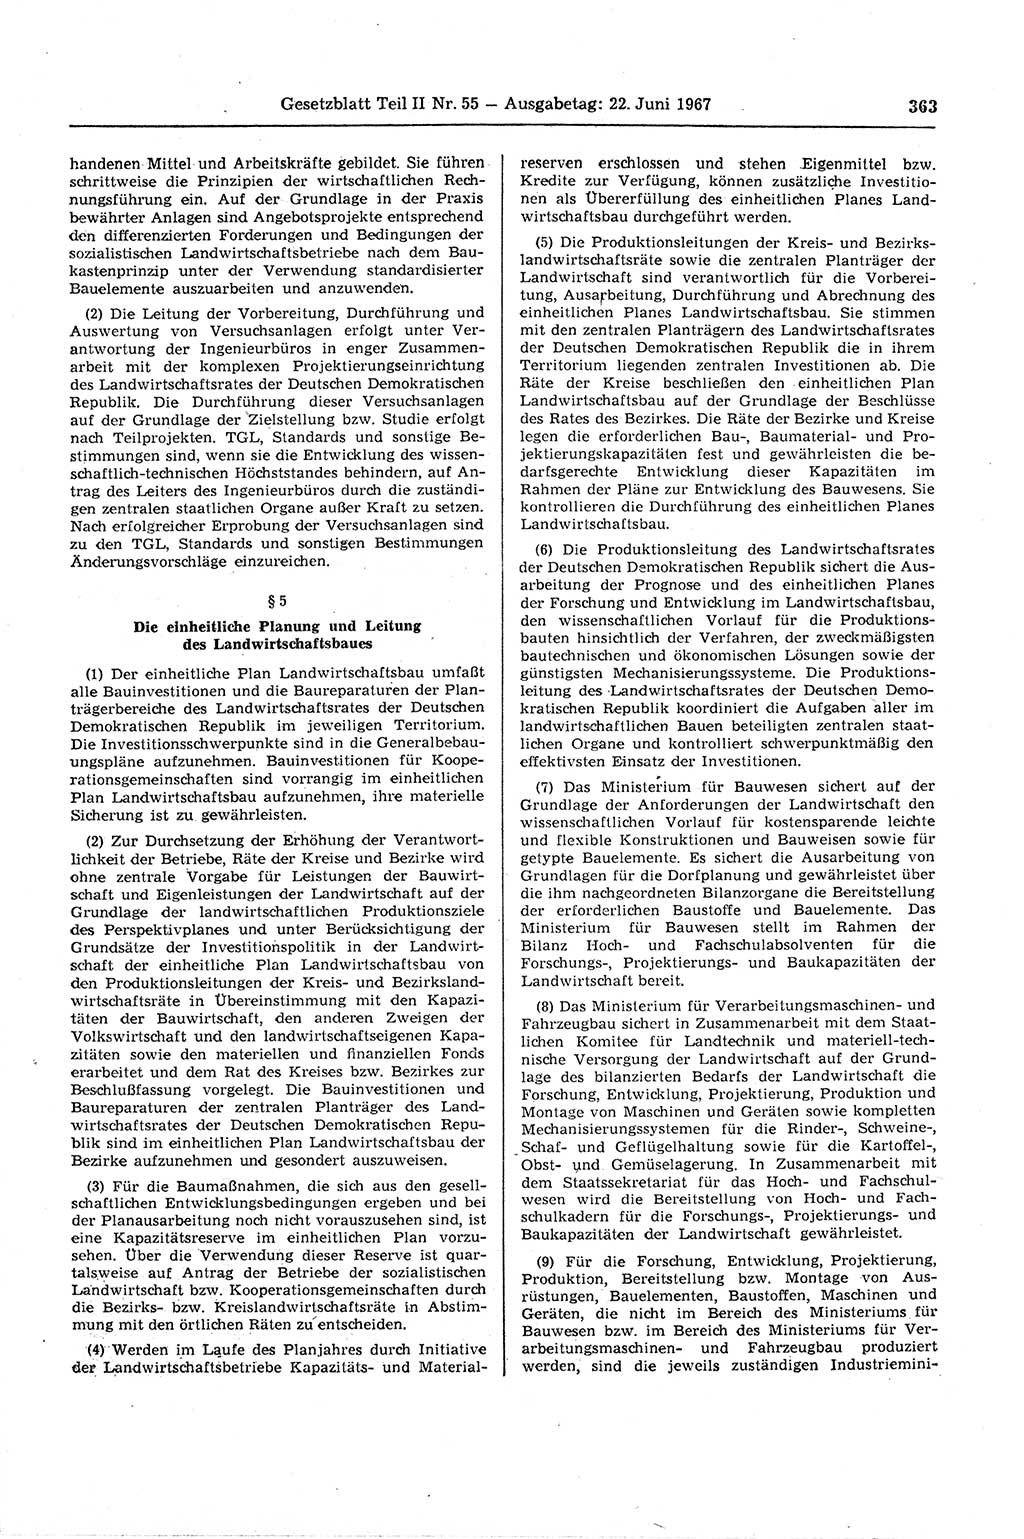 Gesetzblatt (GBl.) der Deutschen Demokratischen Republik (DDR) Teil ⅠⅠ 1967, Seite 363 (GBl. DDR ⅠⅠ 1967, S. 363)